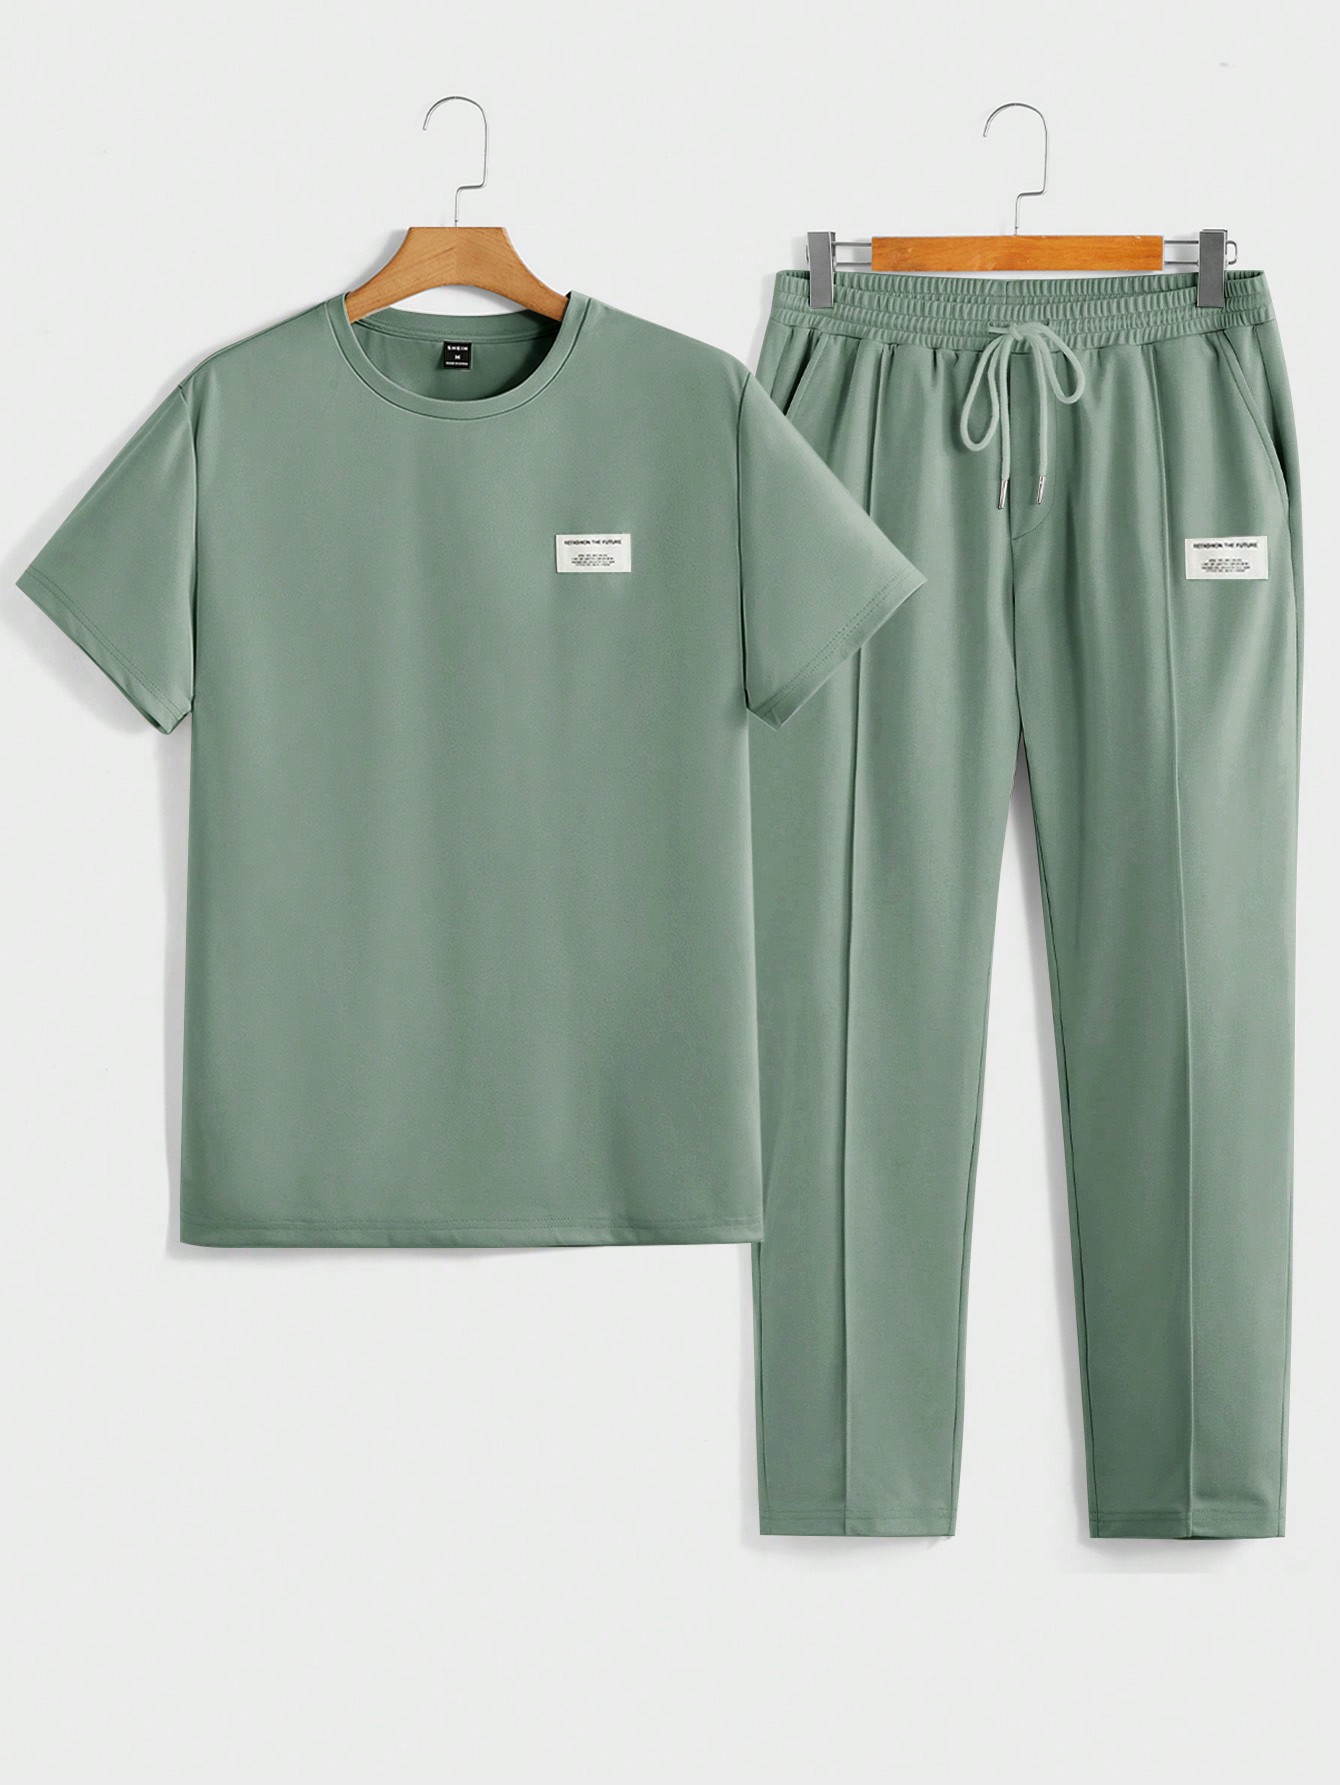 Мужская футболка с короткими рукавами и трикотажными повседневными брюками Manfinity Homme с надписью и нашивкой, зеленый черная футболка с вышивкой solid homme